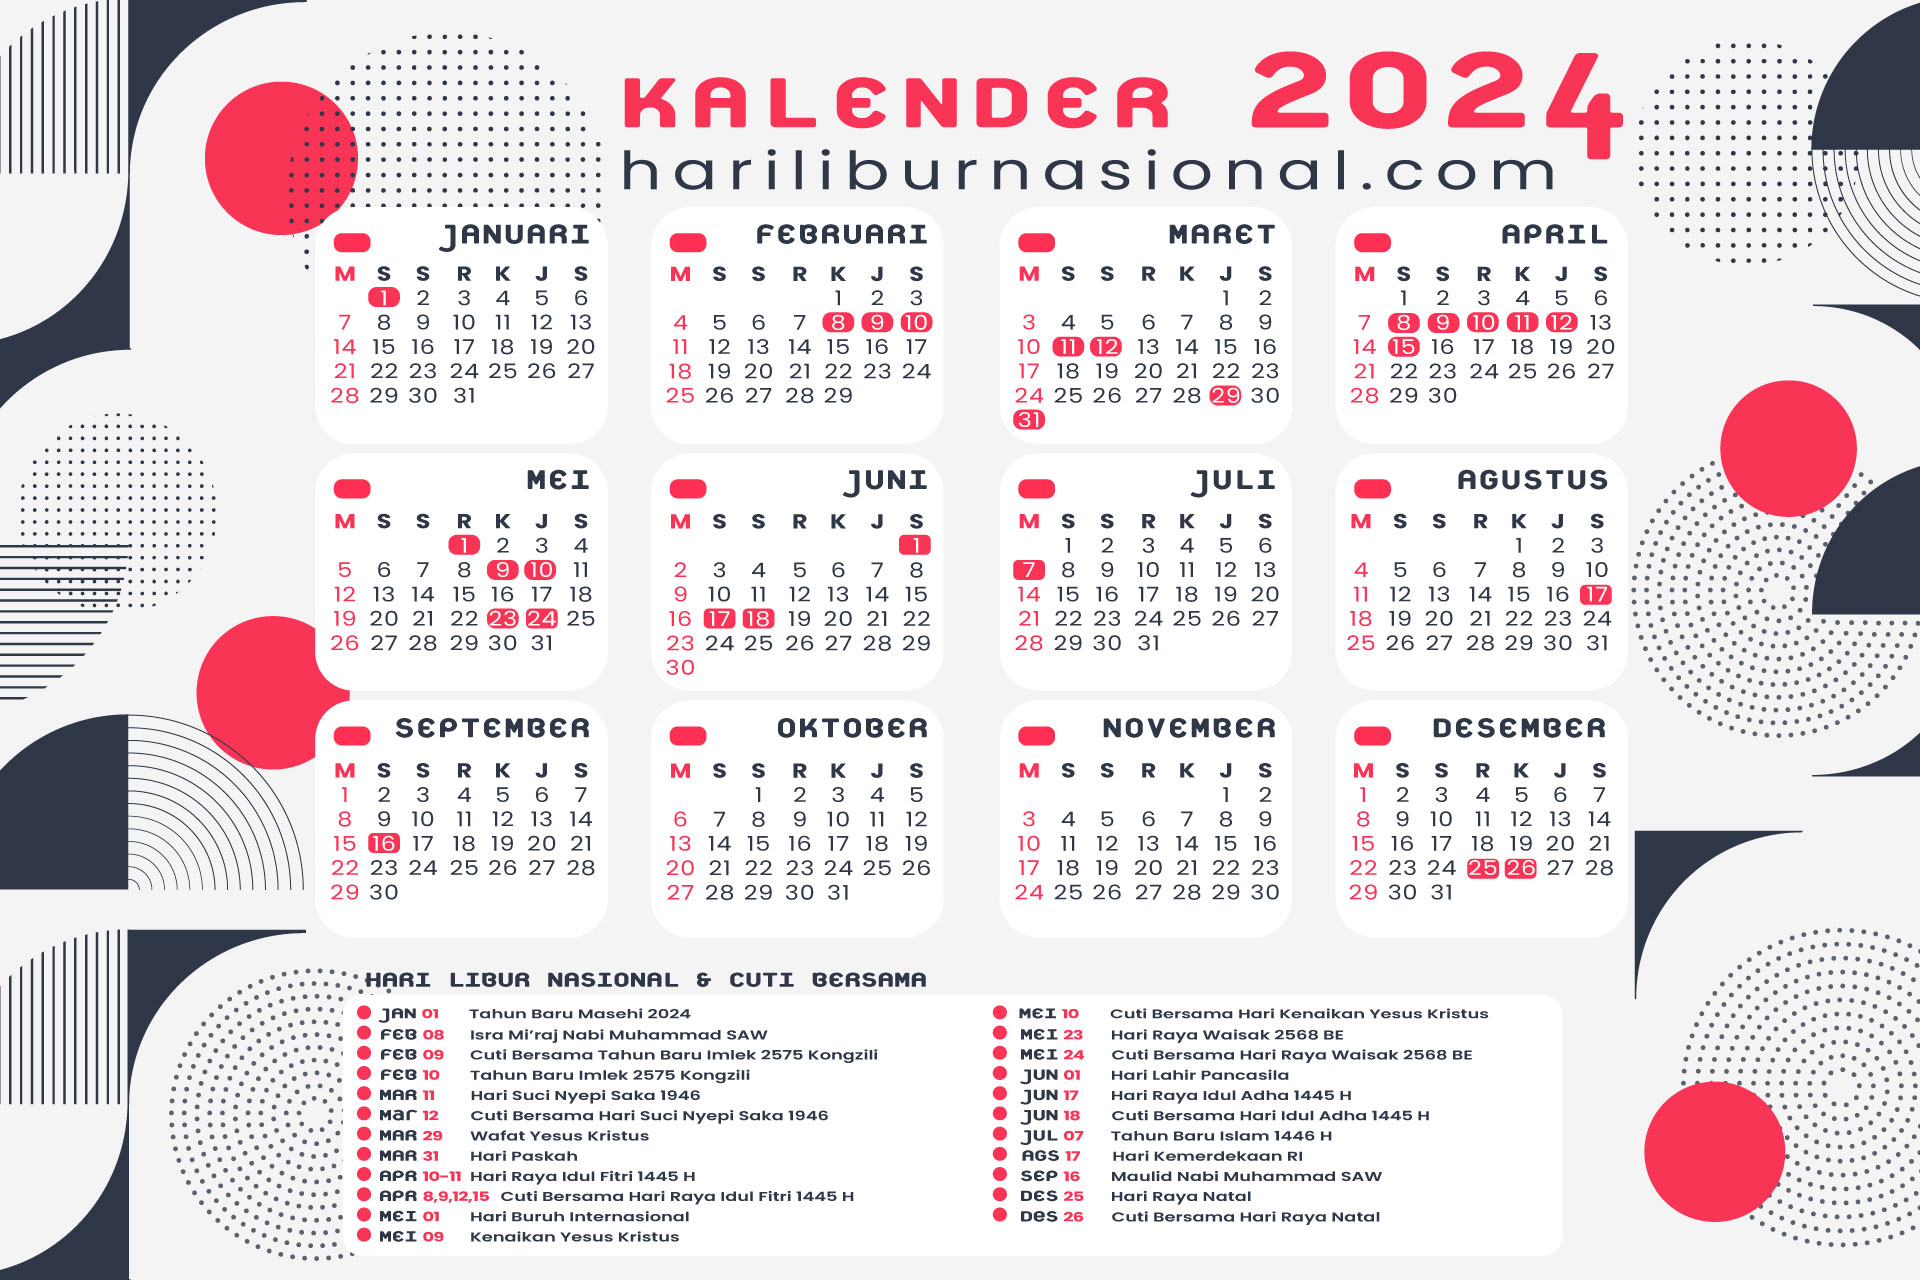 Byebye 2023!!! Ini Daftar Hari Libur Nasional Tahun 2024 Menurut SK 3